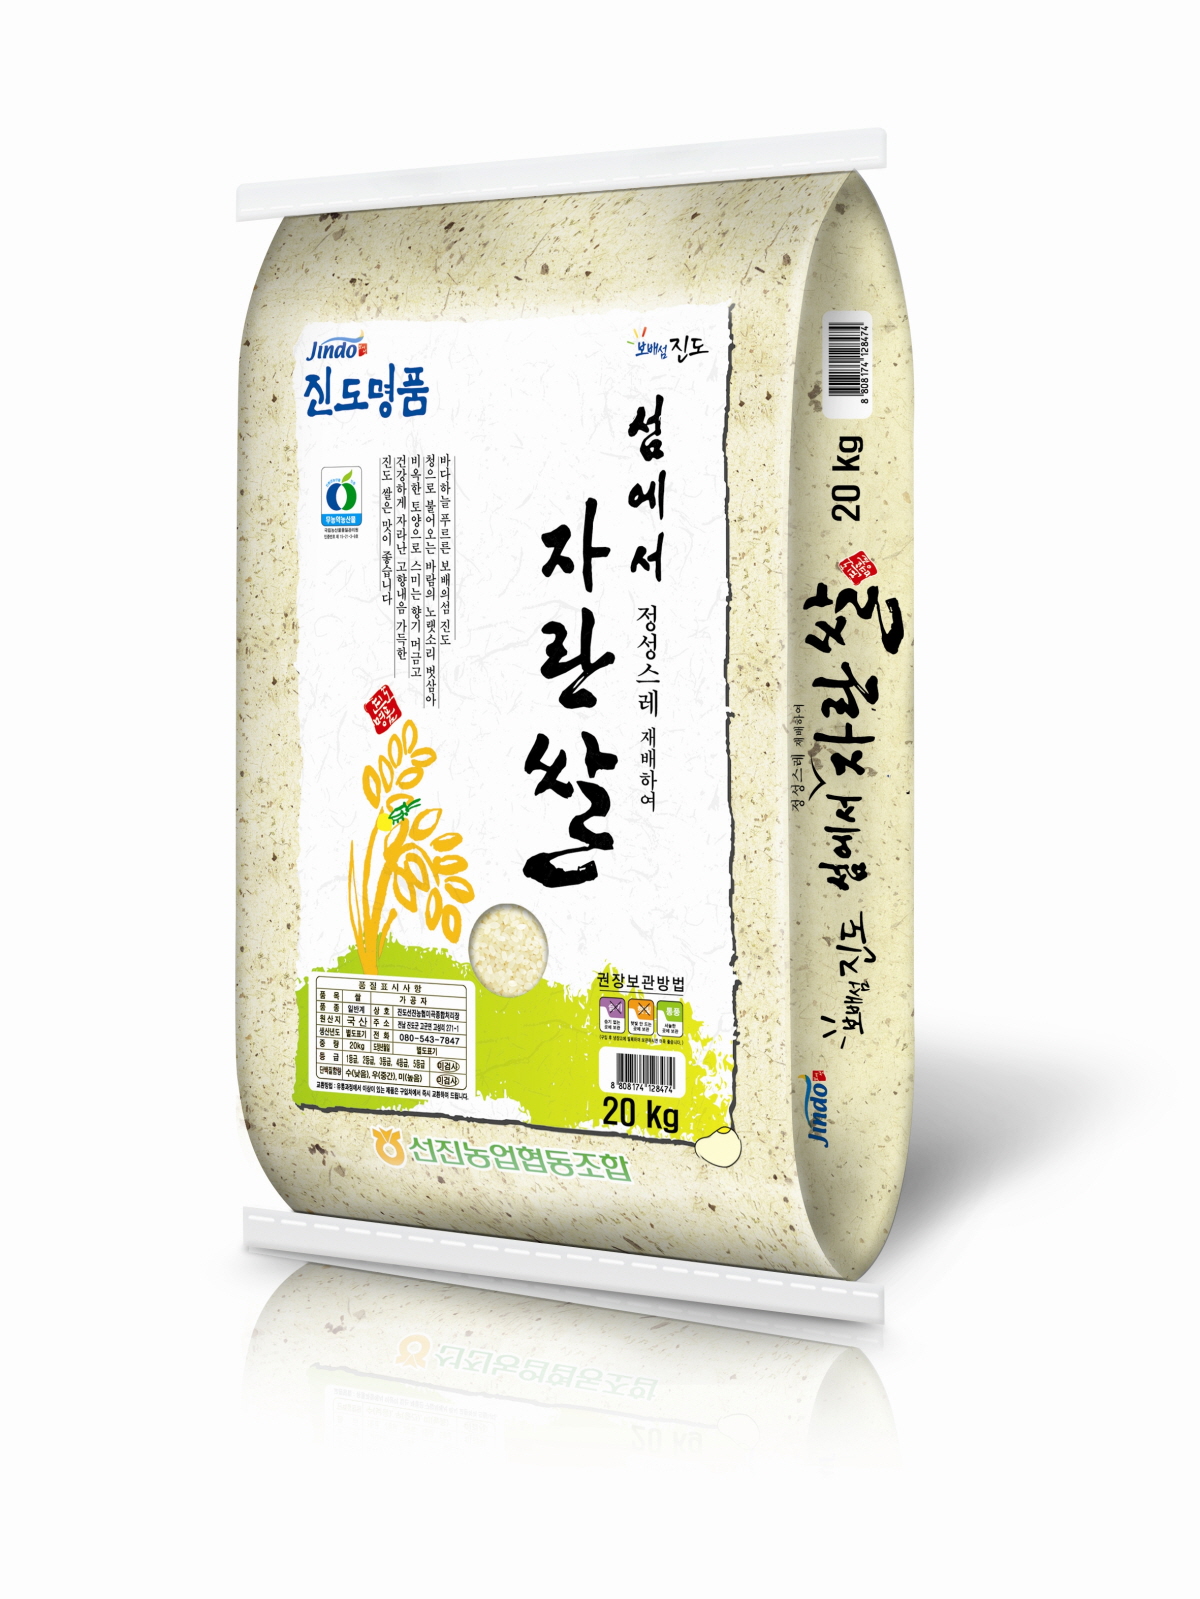 ˝친환경 진도 쌀, 광주광역시 학생들 밥상 책임진다˝ 이미지